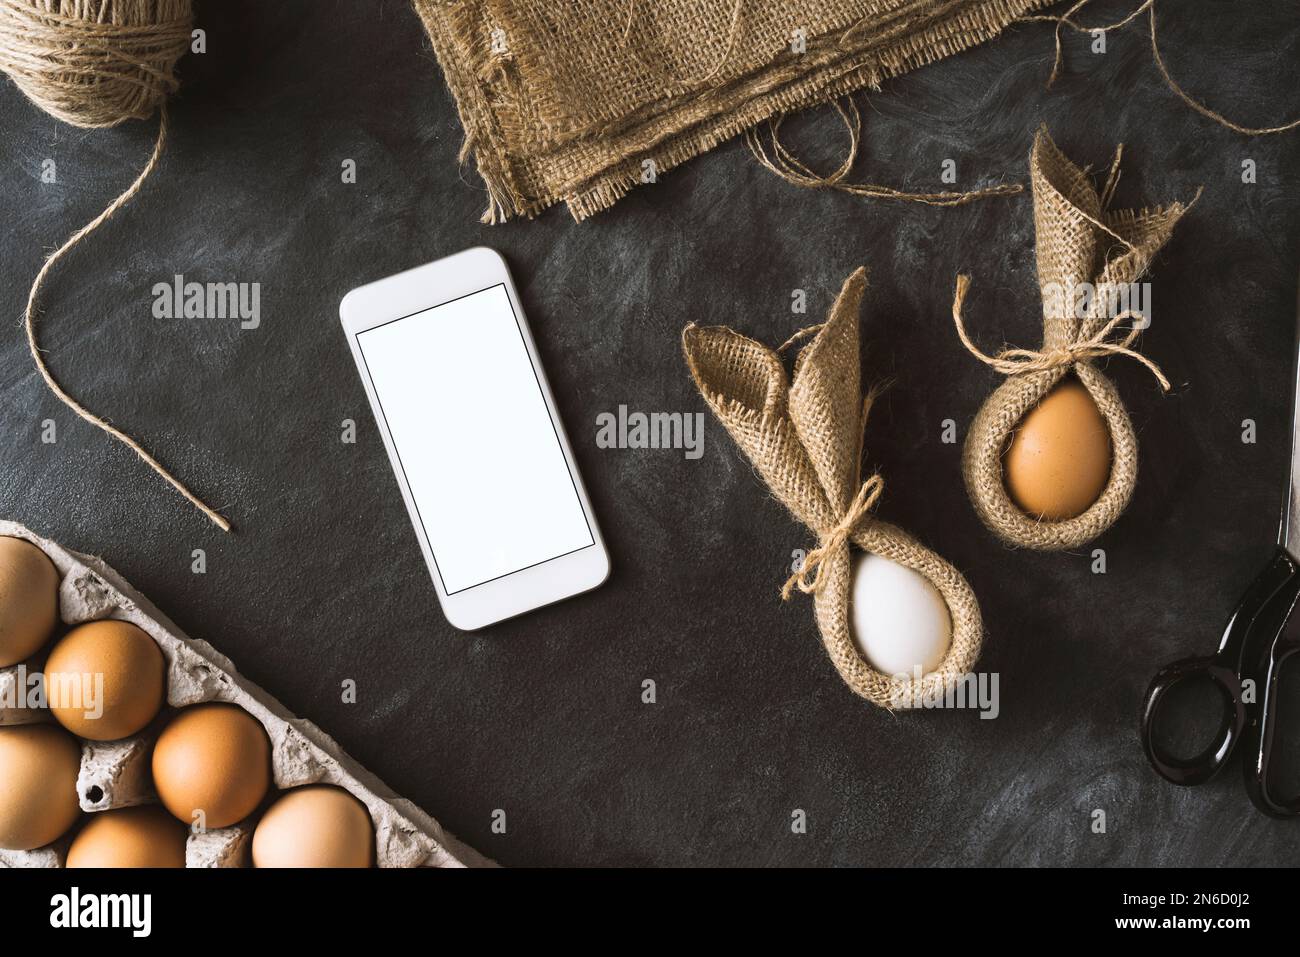 Ostervorbereitungen. Tischaufnahme mit Smartphone und osterhäschen-Eiern. Stockfoto